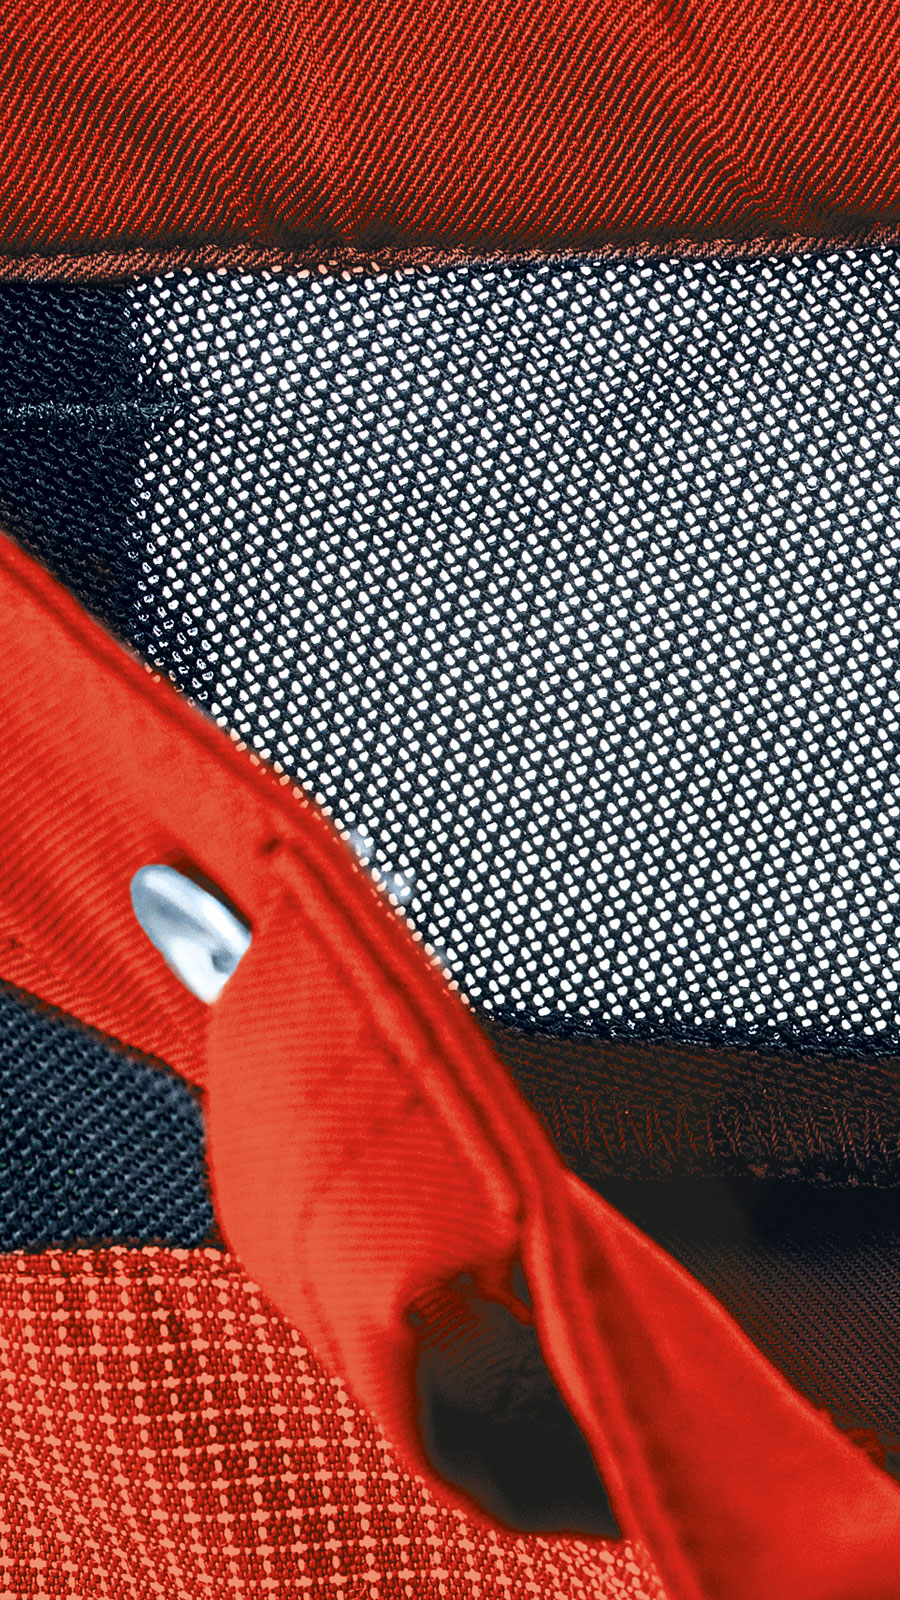 Pantalon anti-coupure X-treme Air PSS orange/gris